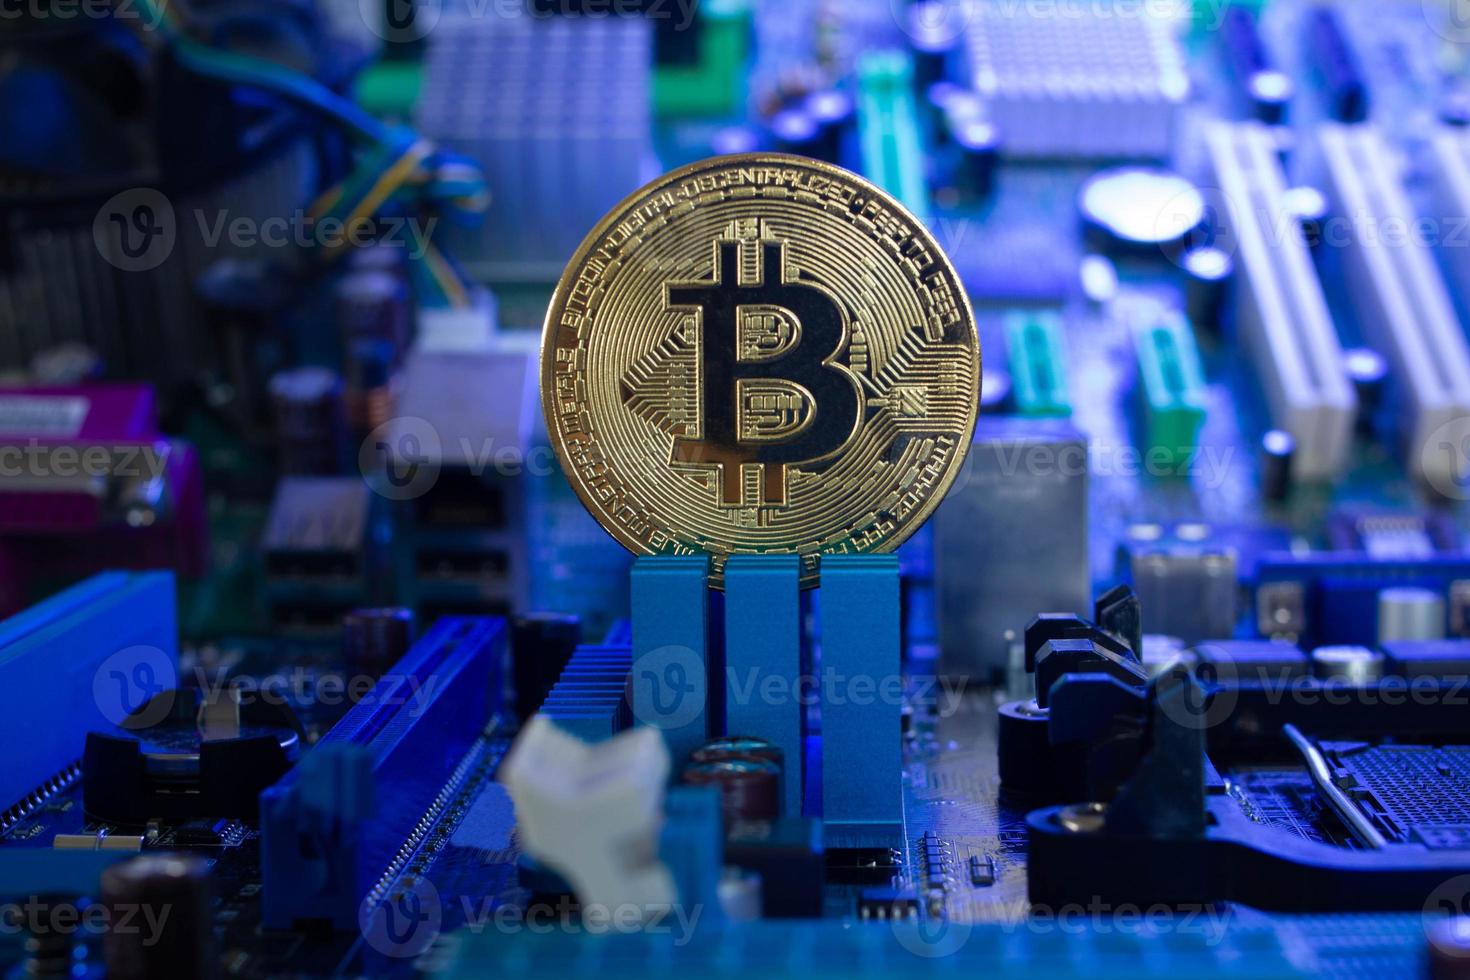 moeda de bitcoin dourada em um fundo claramente visível de microchips e componentes de rádio em luz azul. novo conceito de criptomoeda digital da indústria blockchain. fechar-se. foto